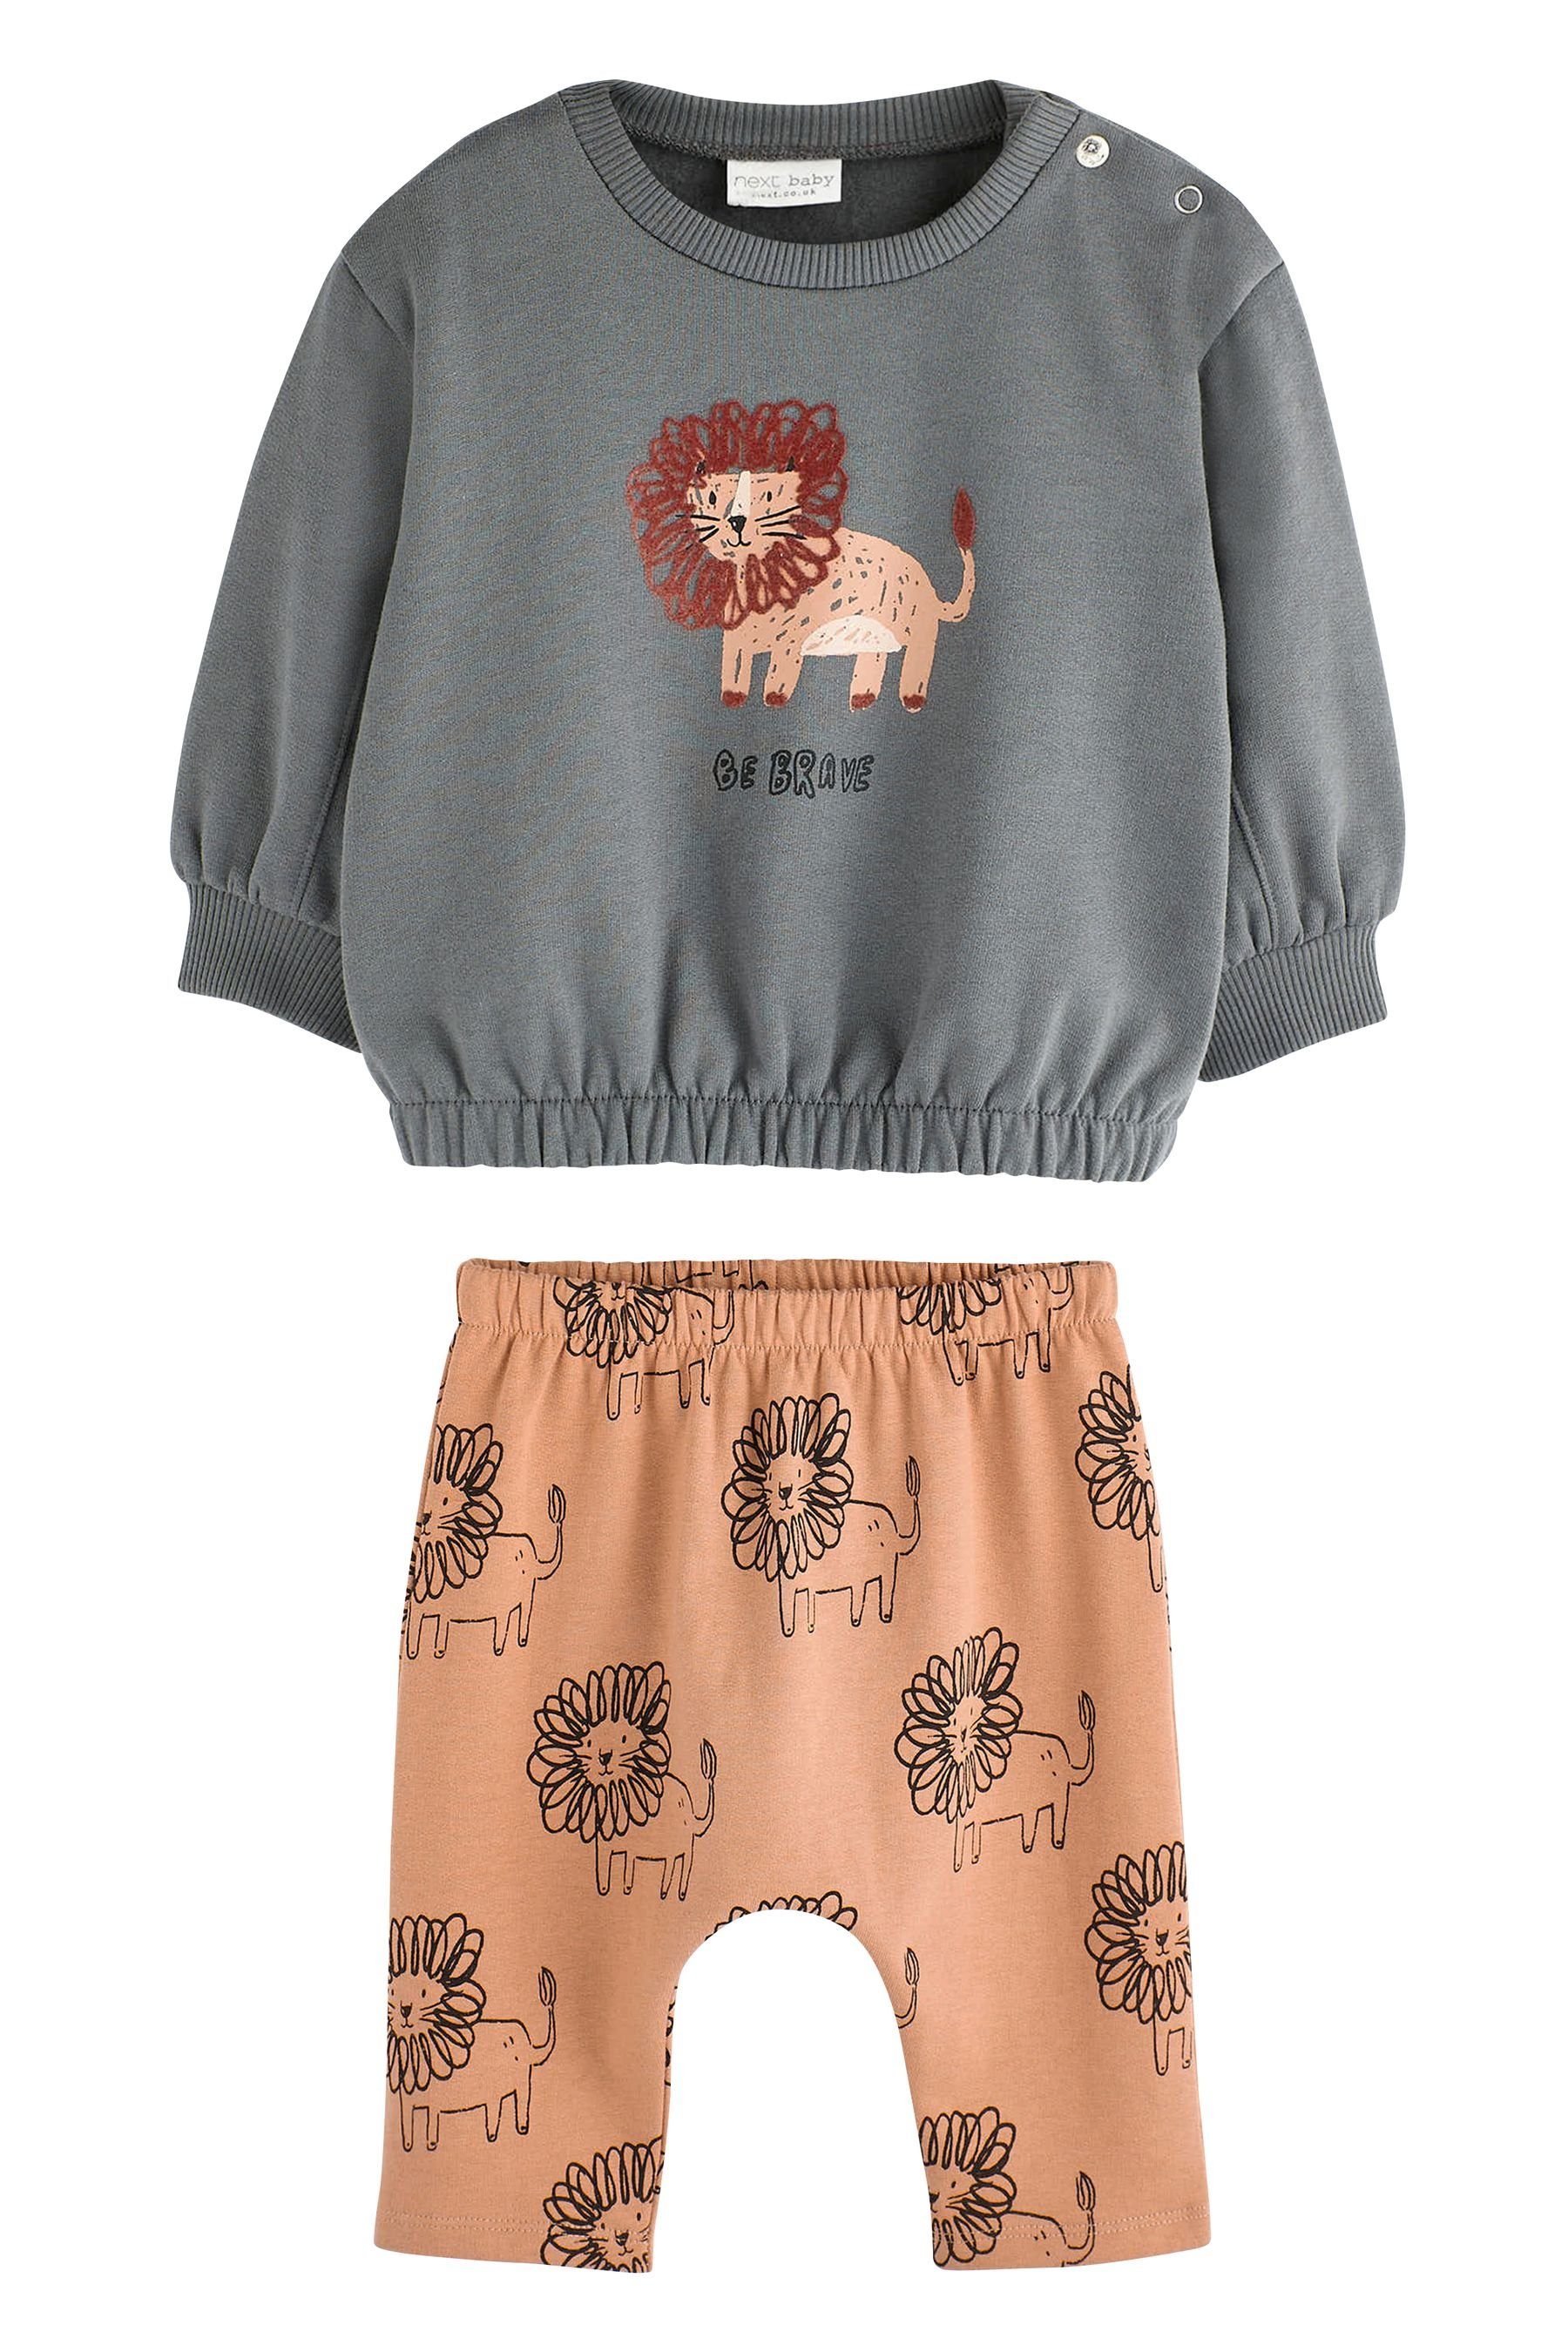 Next Sweatanzug 2-teiliges Baby-Set (2-tlg) Sweatshirt mit Grey/Rust Charcoal Brown Jogginghose Lion und